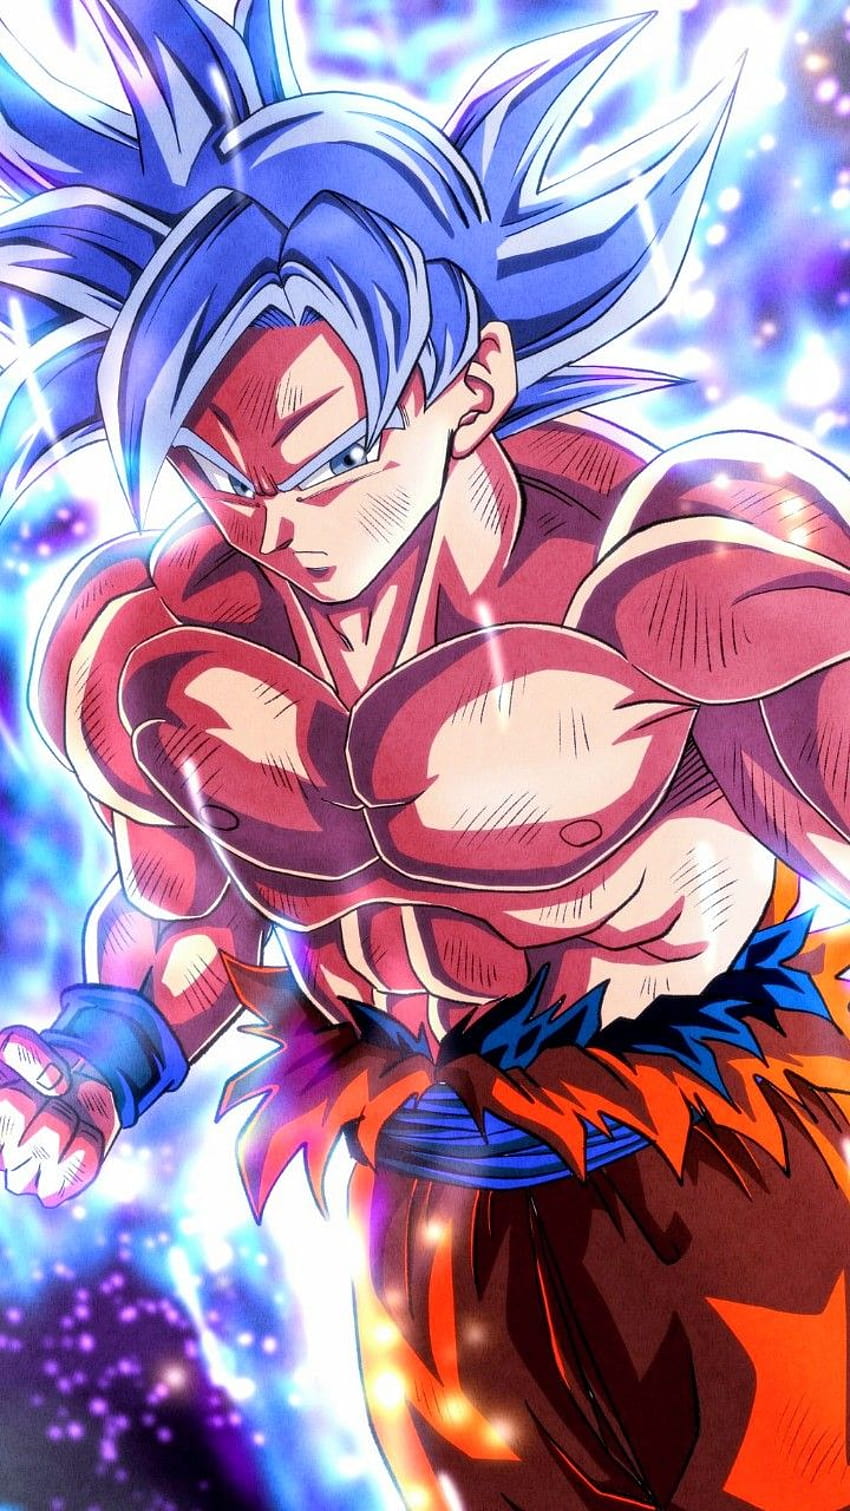 Goku MUI in 2021, mui goku android HD phone wallpaper | Pxfuel